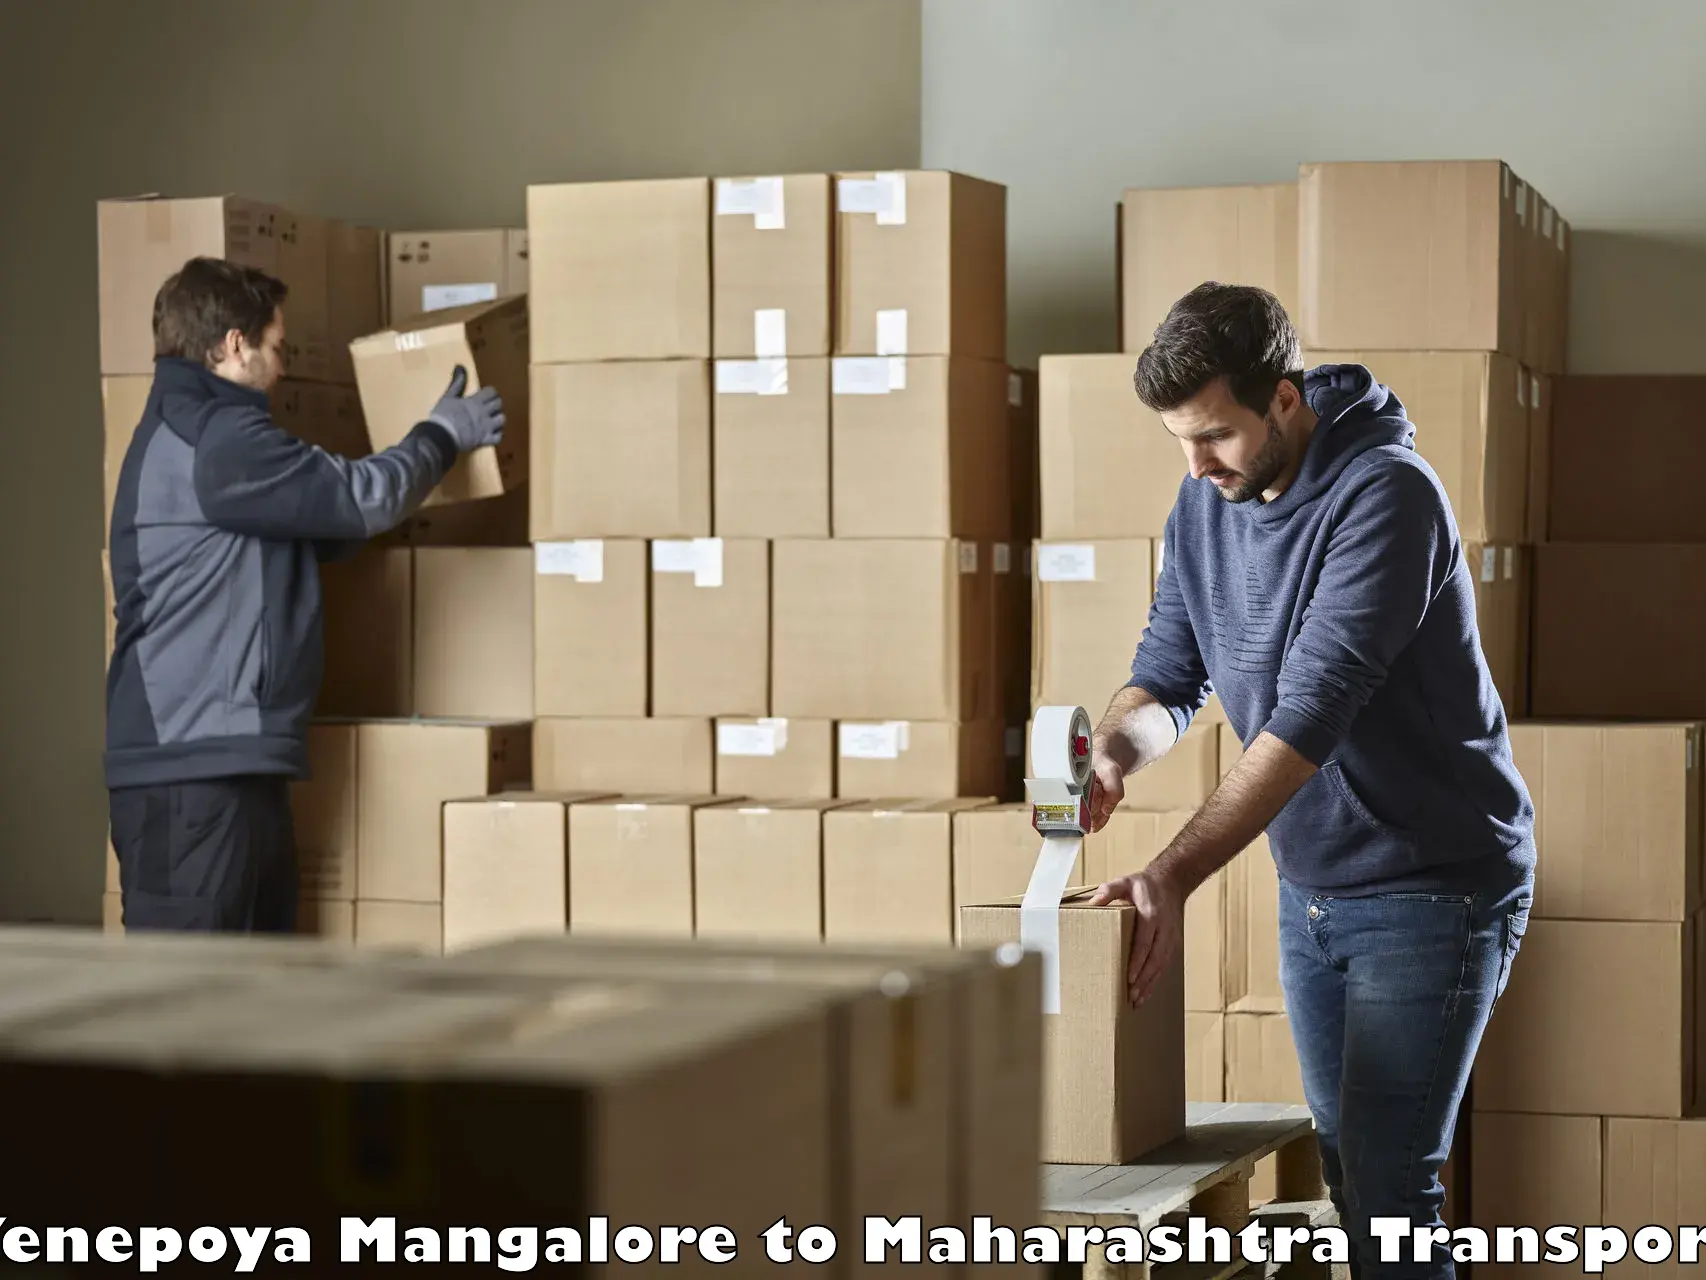 Land transport services Yenepoya Mangalore to Maharashtra